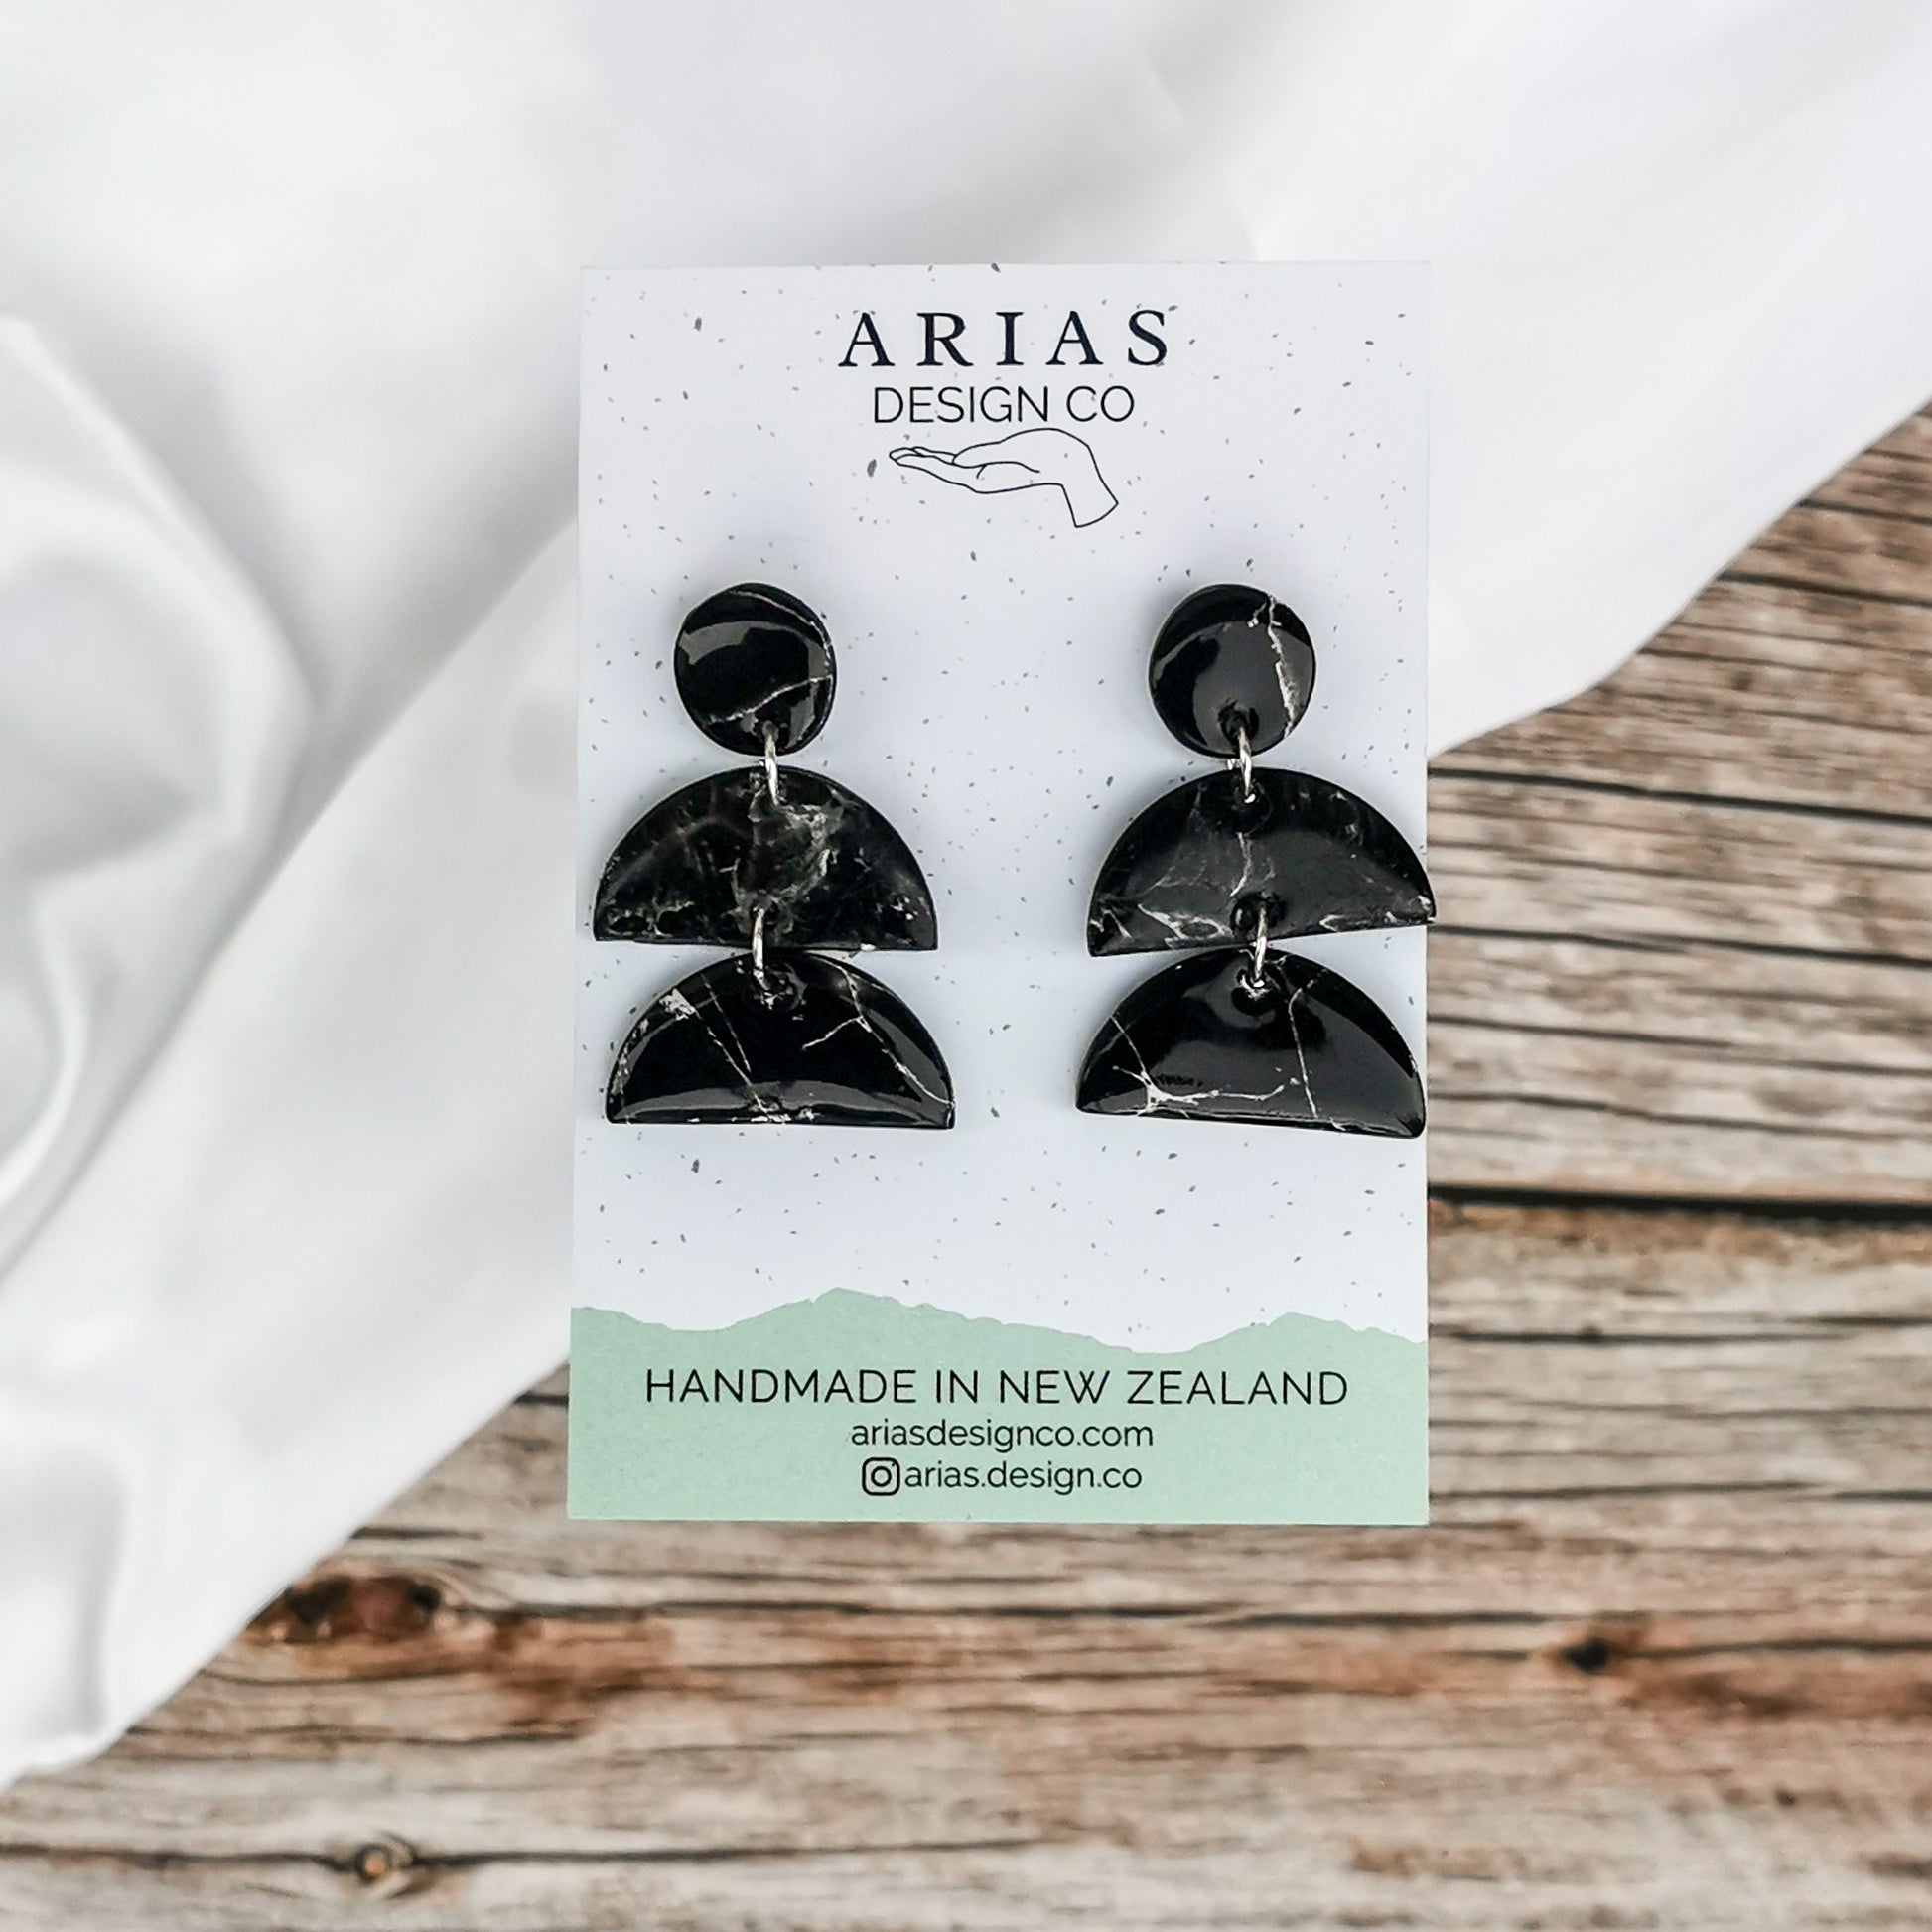 Handmade earrings for sensitive ears made in New Zealand